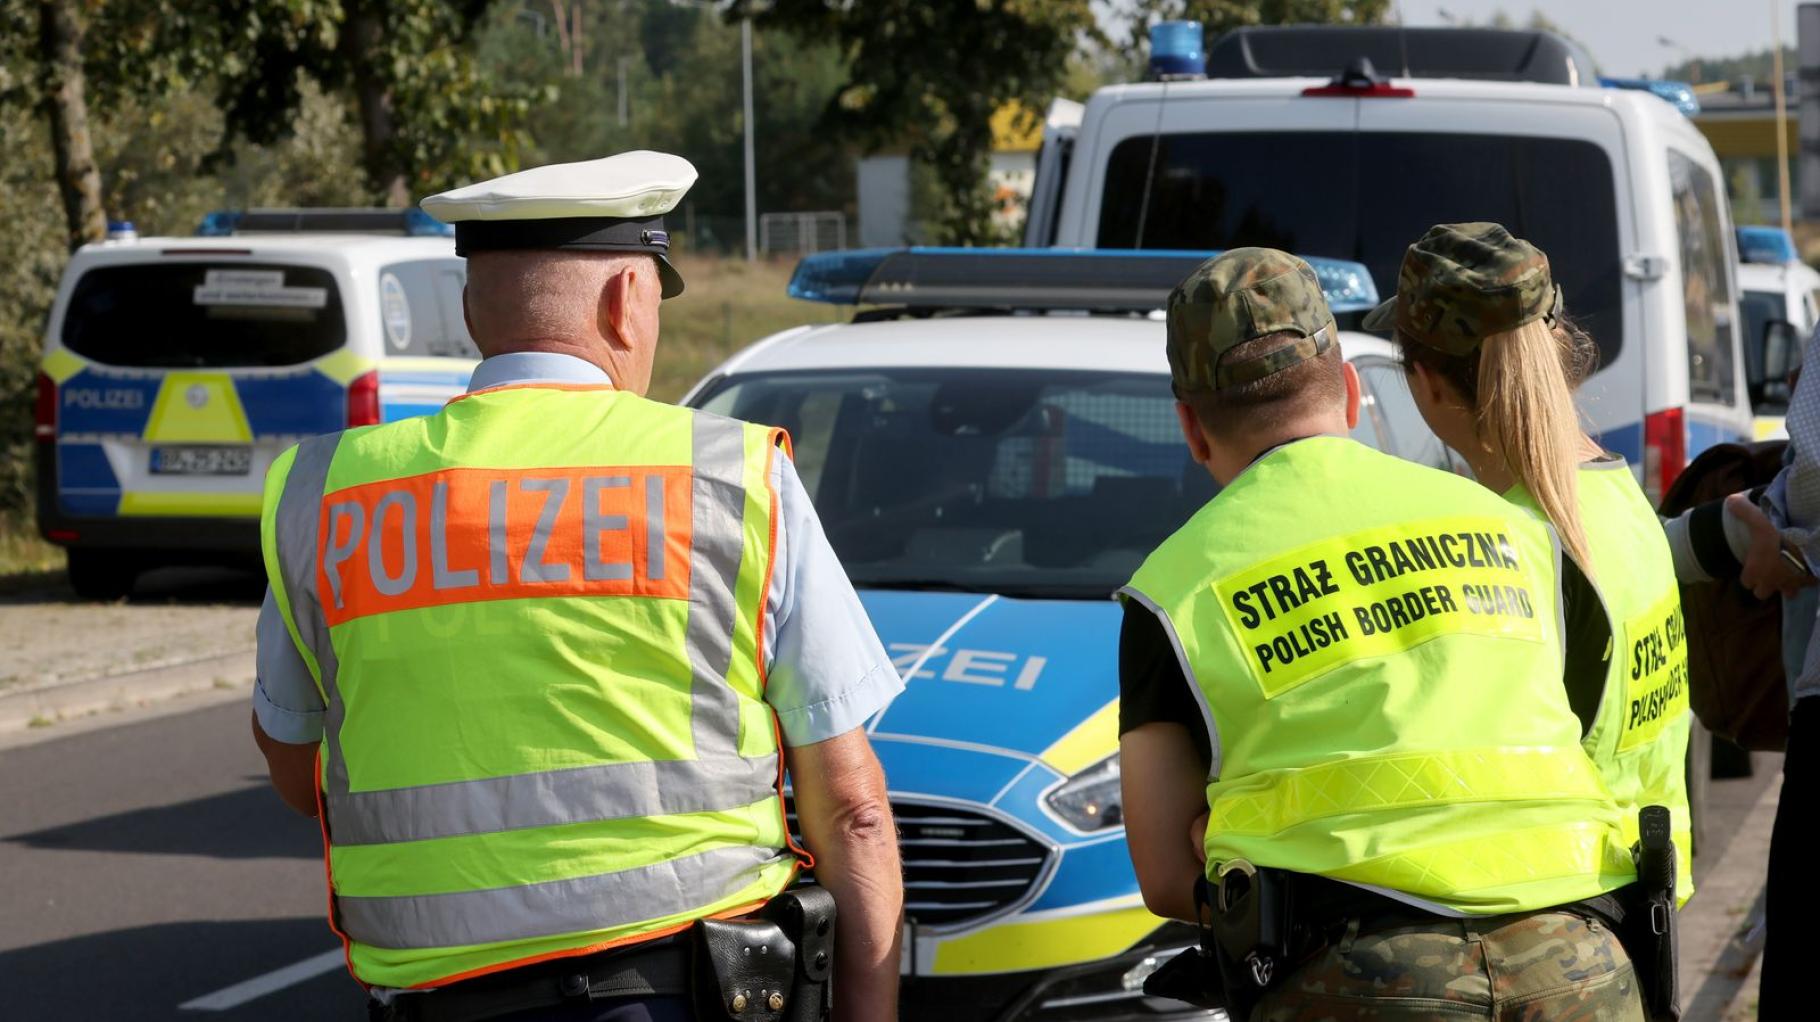 Bundespolizei registriert mehr illegale Einreisen nach MV